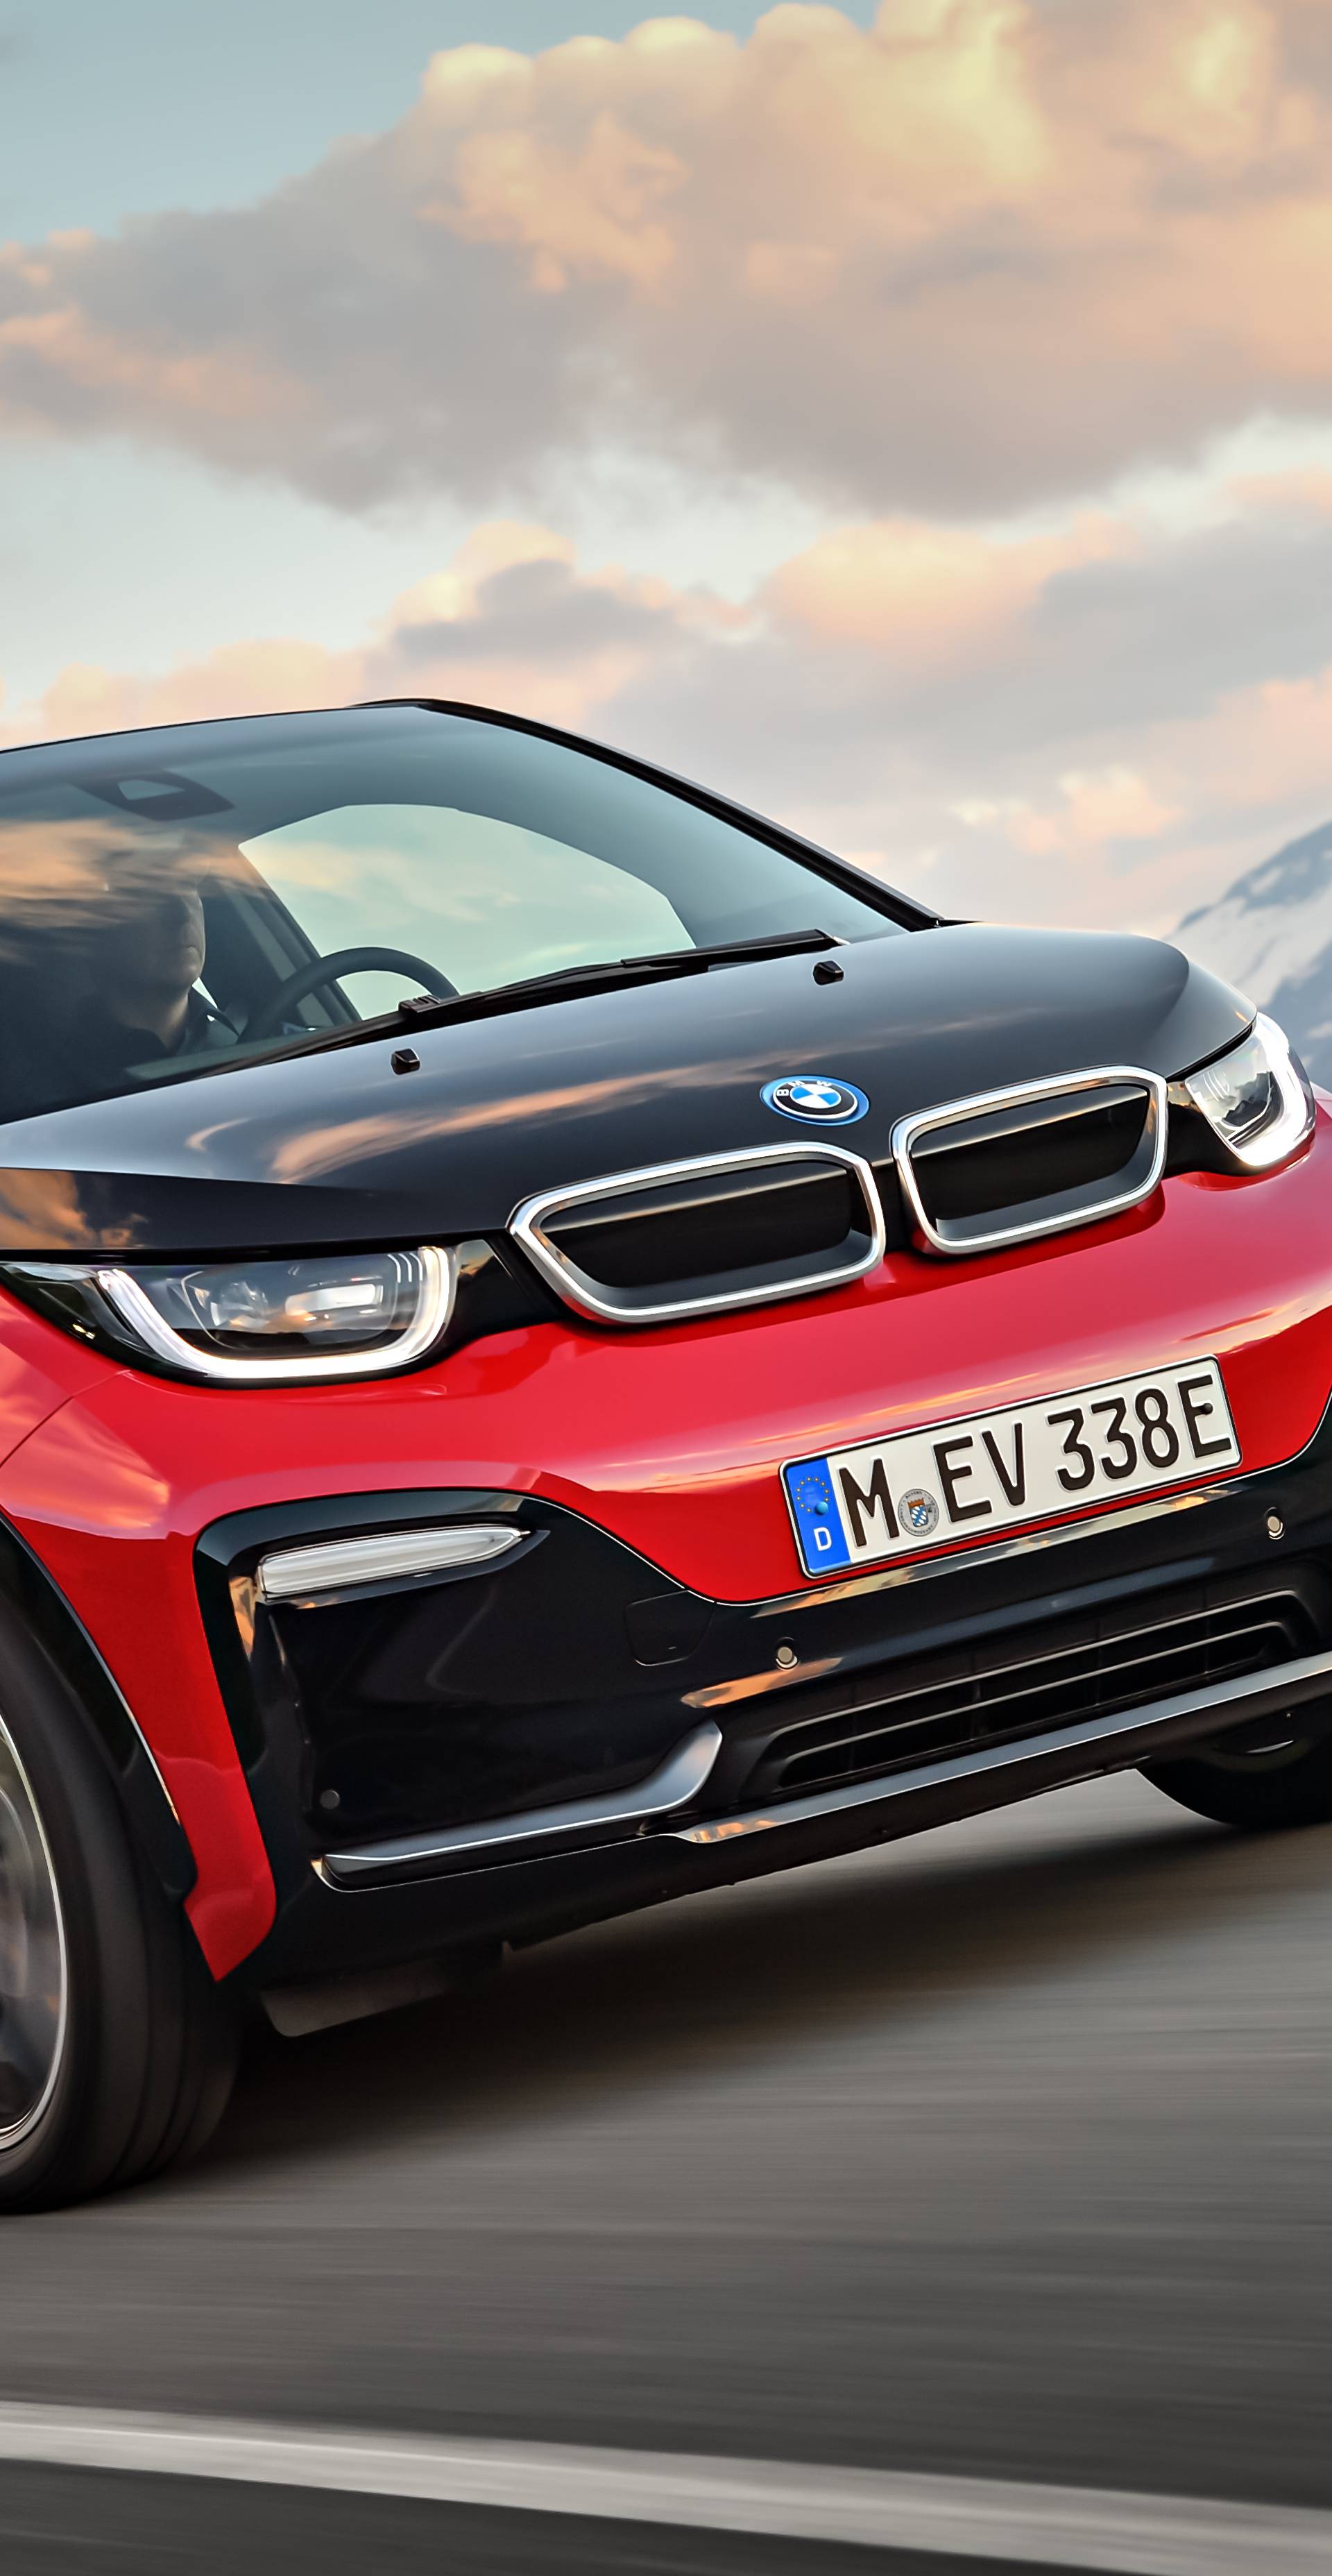 Sportski i na struju: BMW i3s dobio više snage i bolji izgled